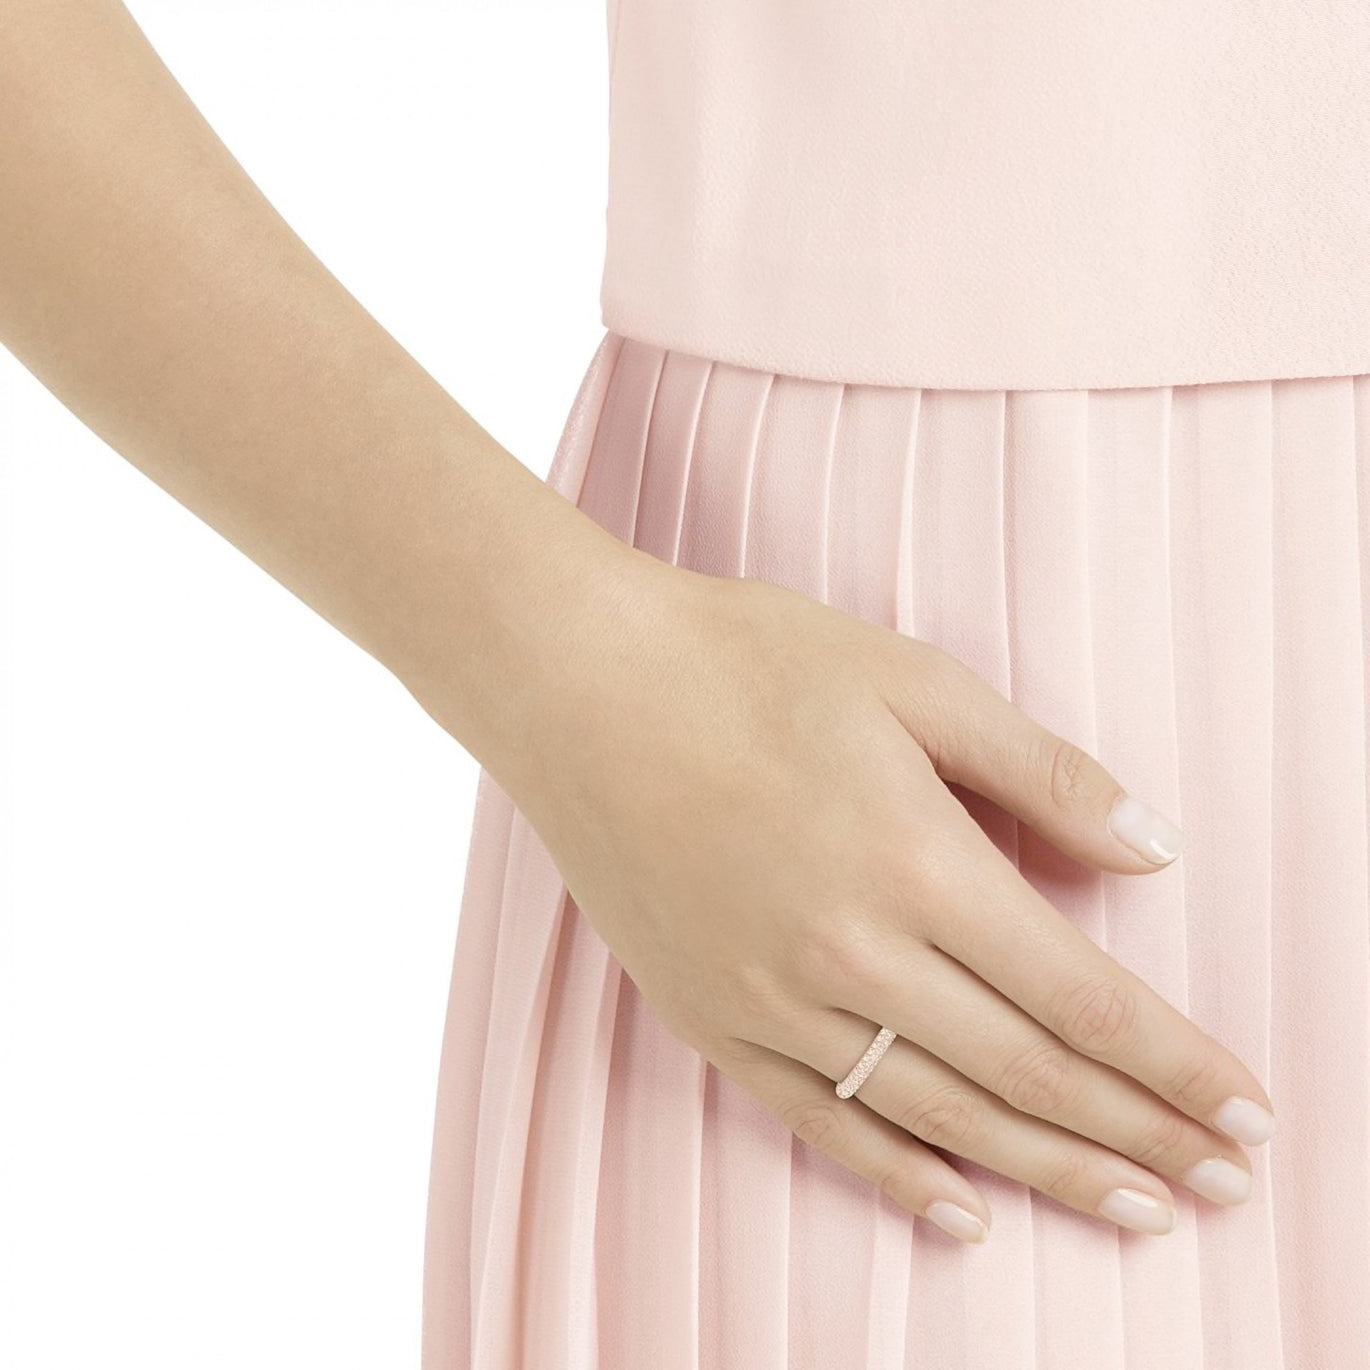 Swarovski Stone Ring, Pink, Rose-Gold Plated Ring